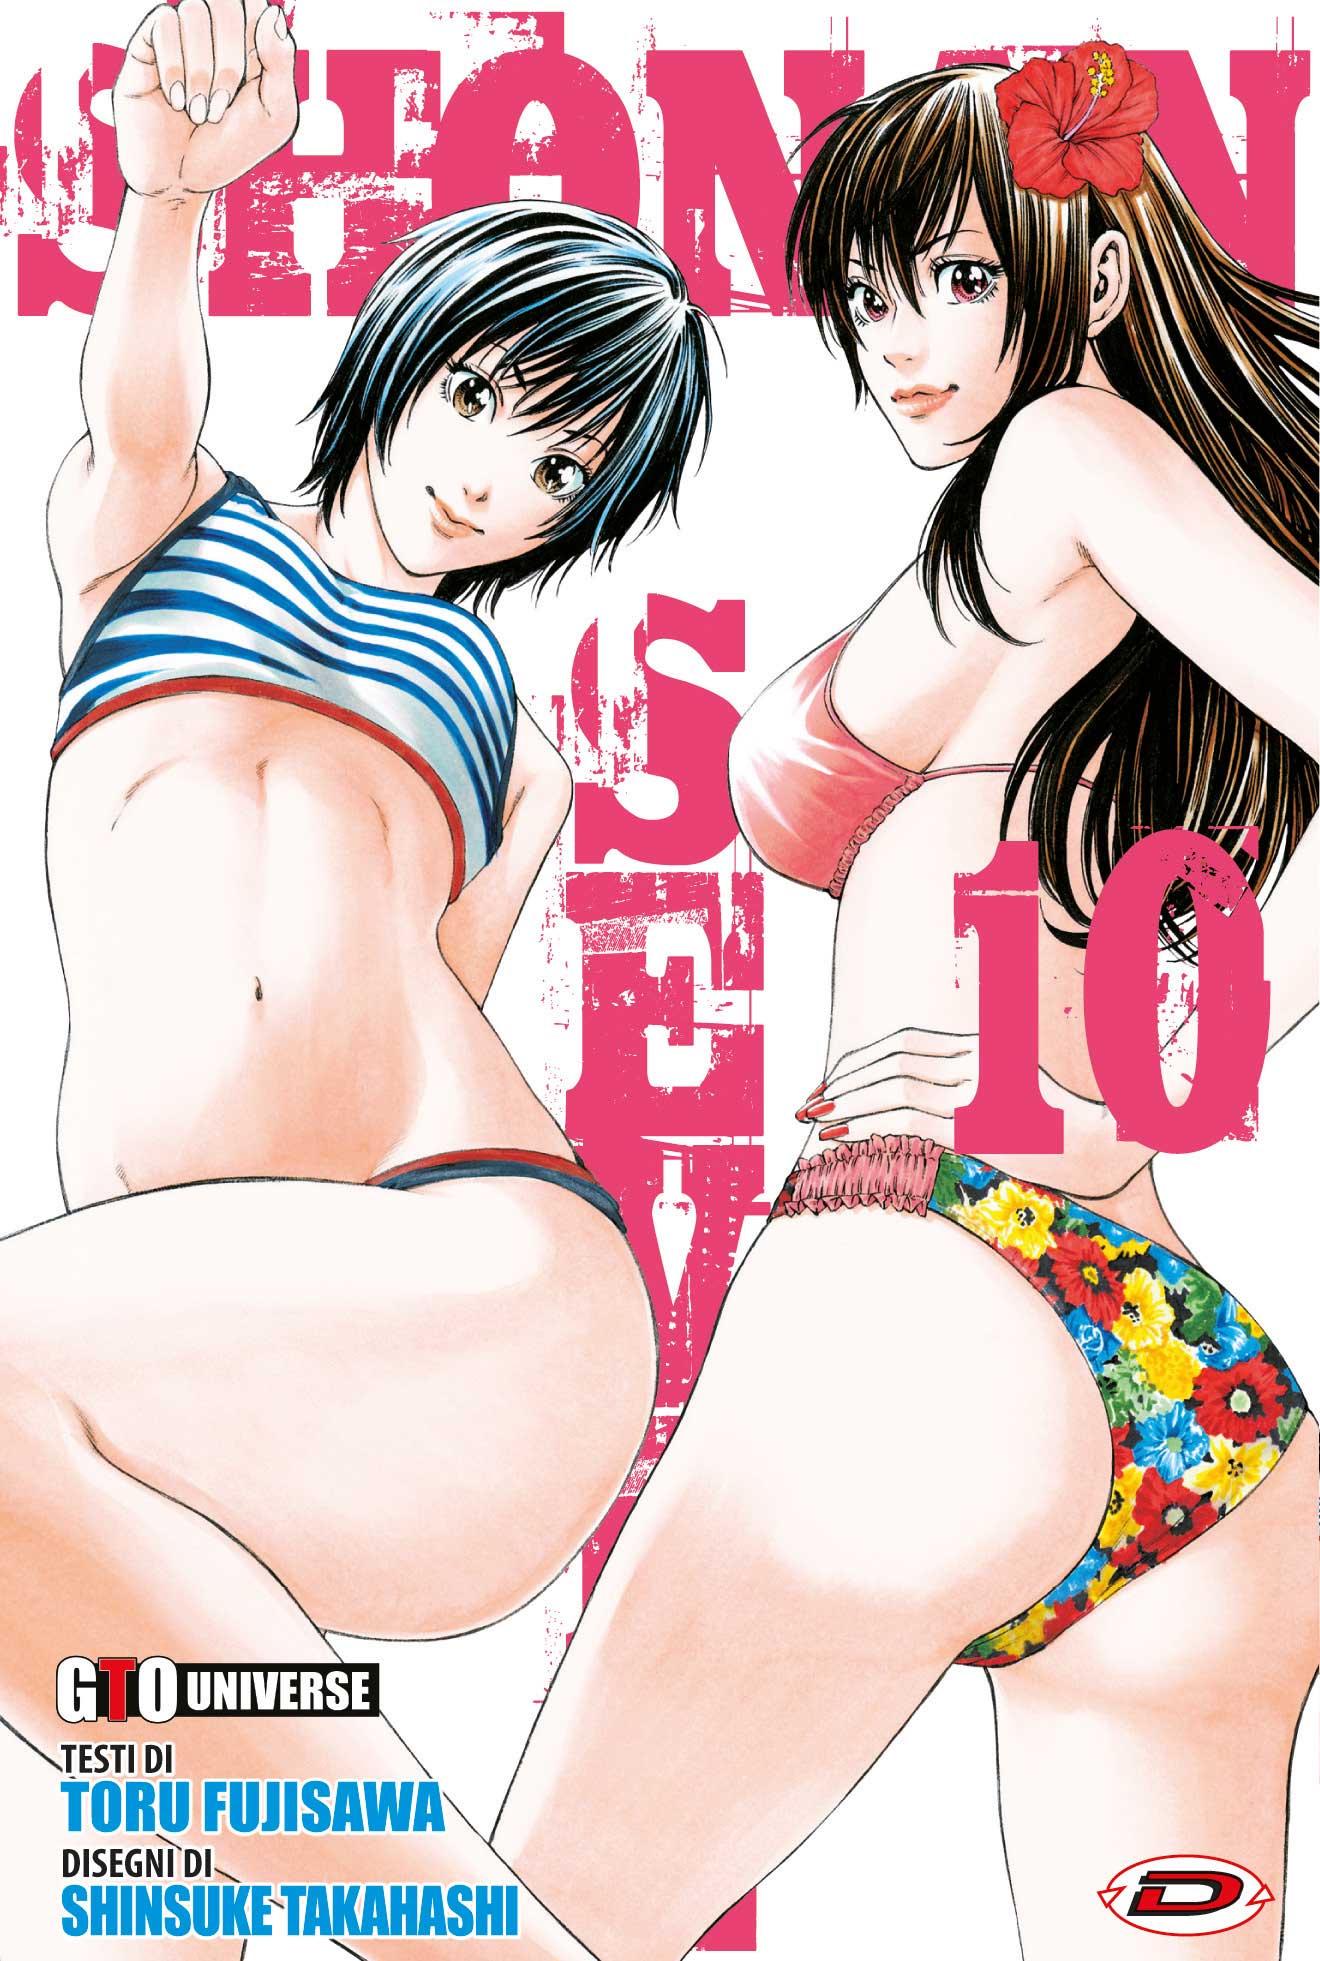 G.T.O. - Shonan Seven #10